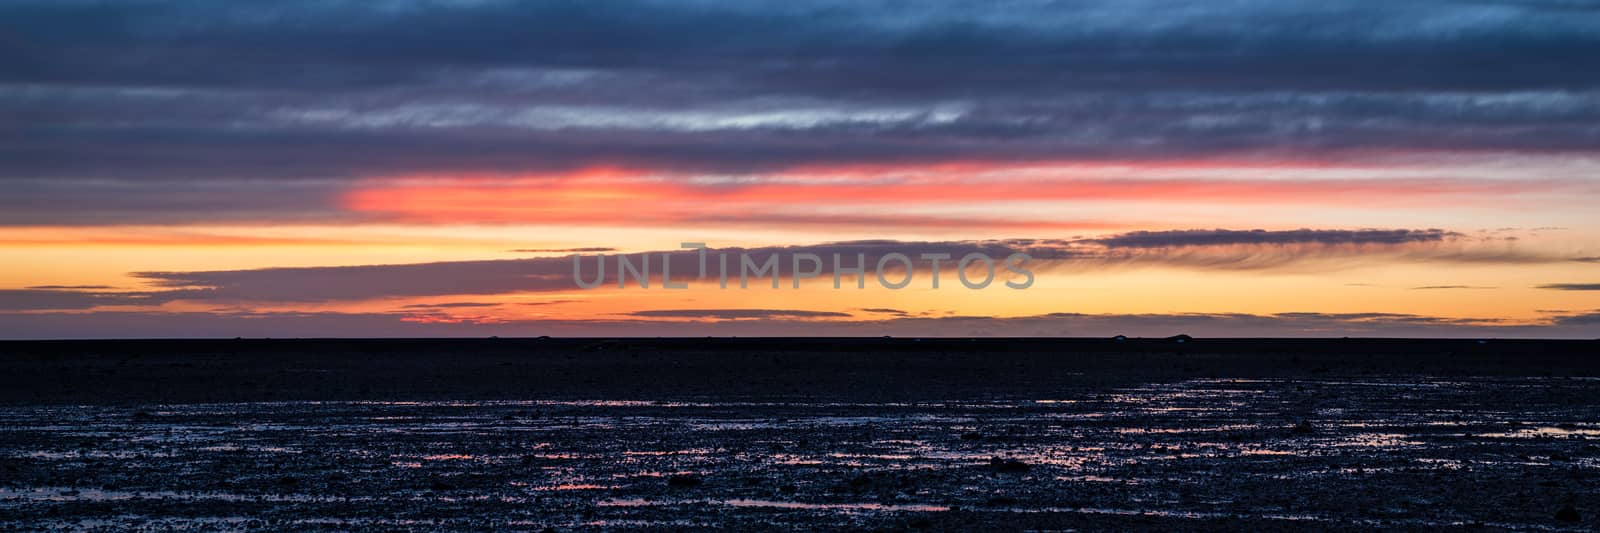 Sunset in Solheimasandur, Iceland by LuigiMorbidelli